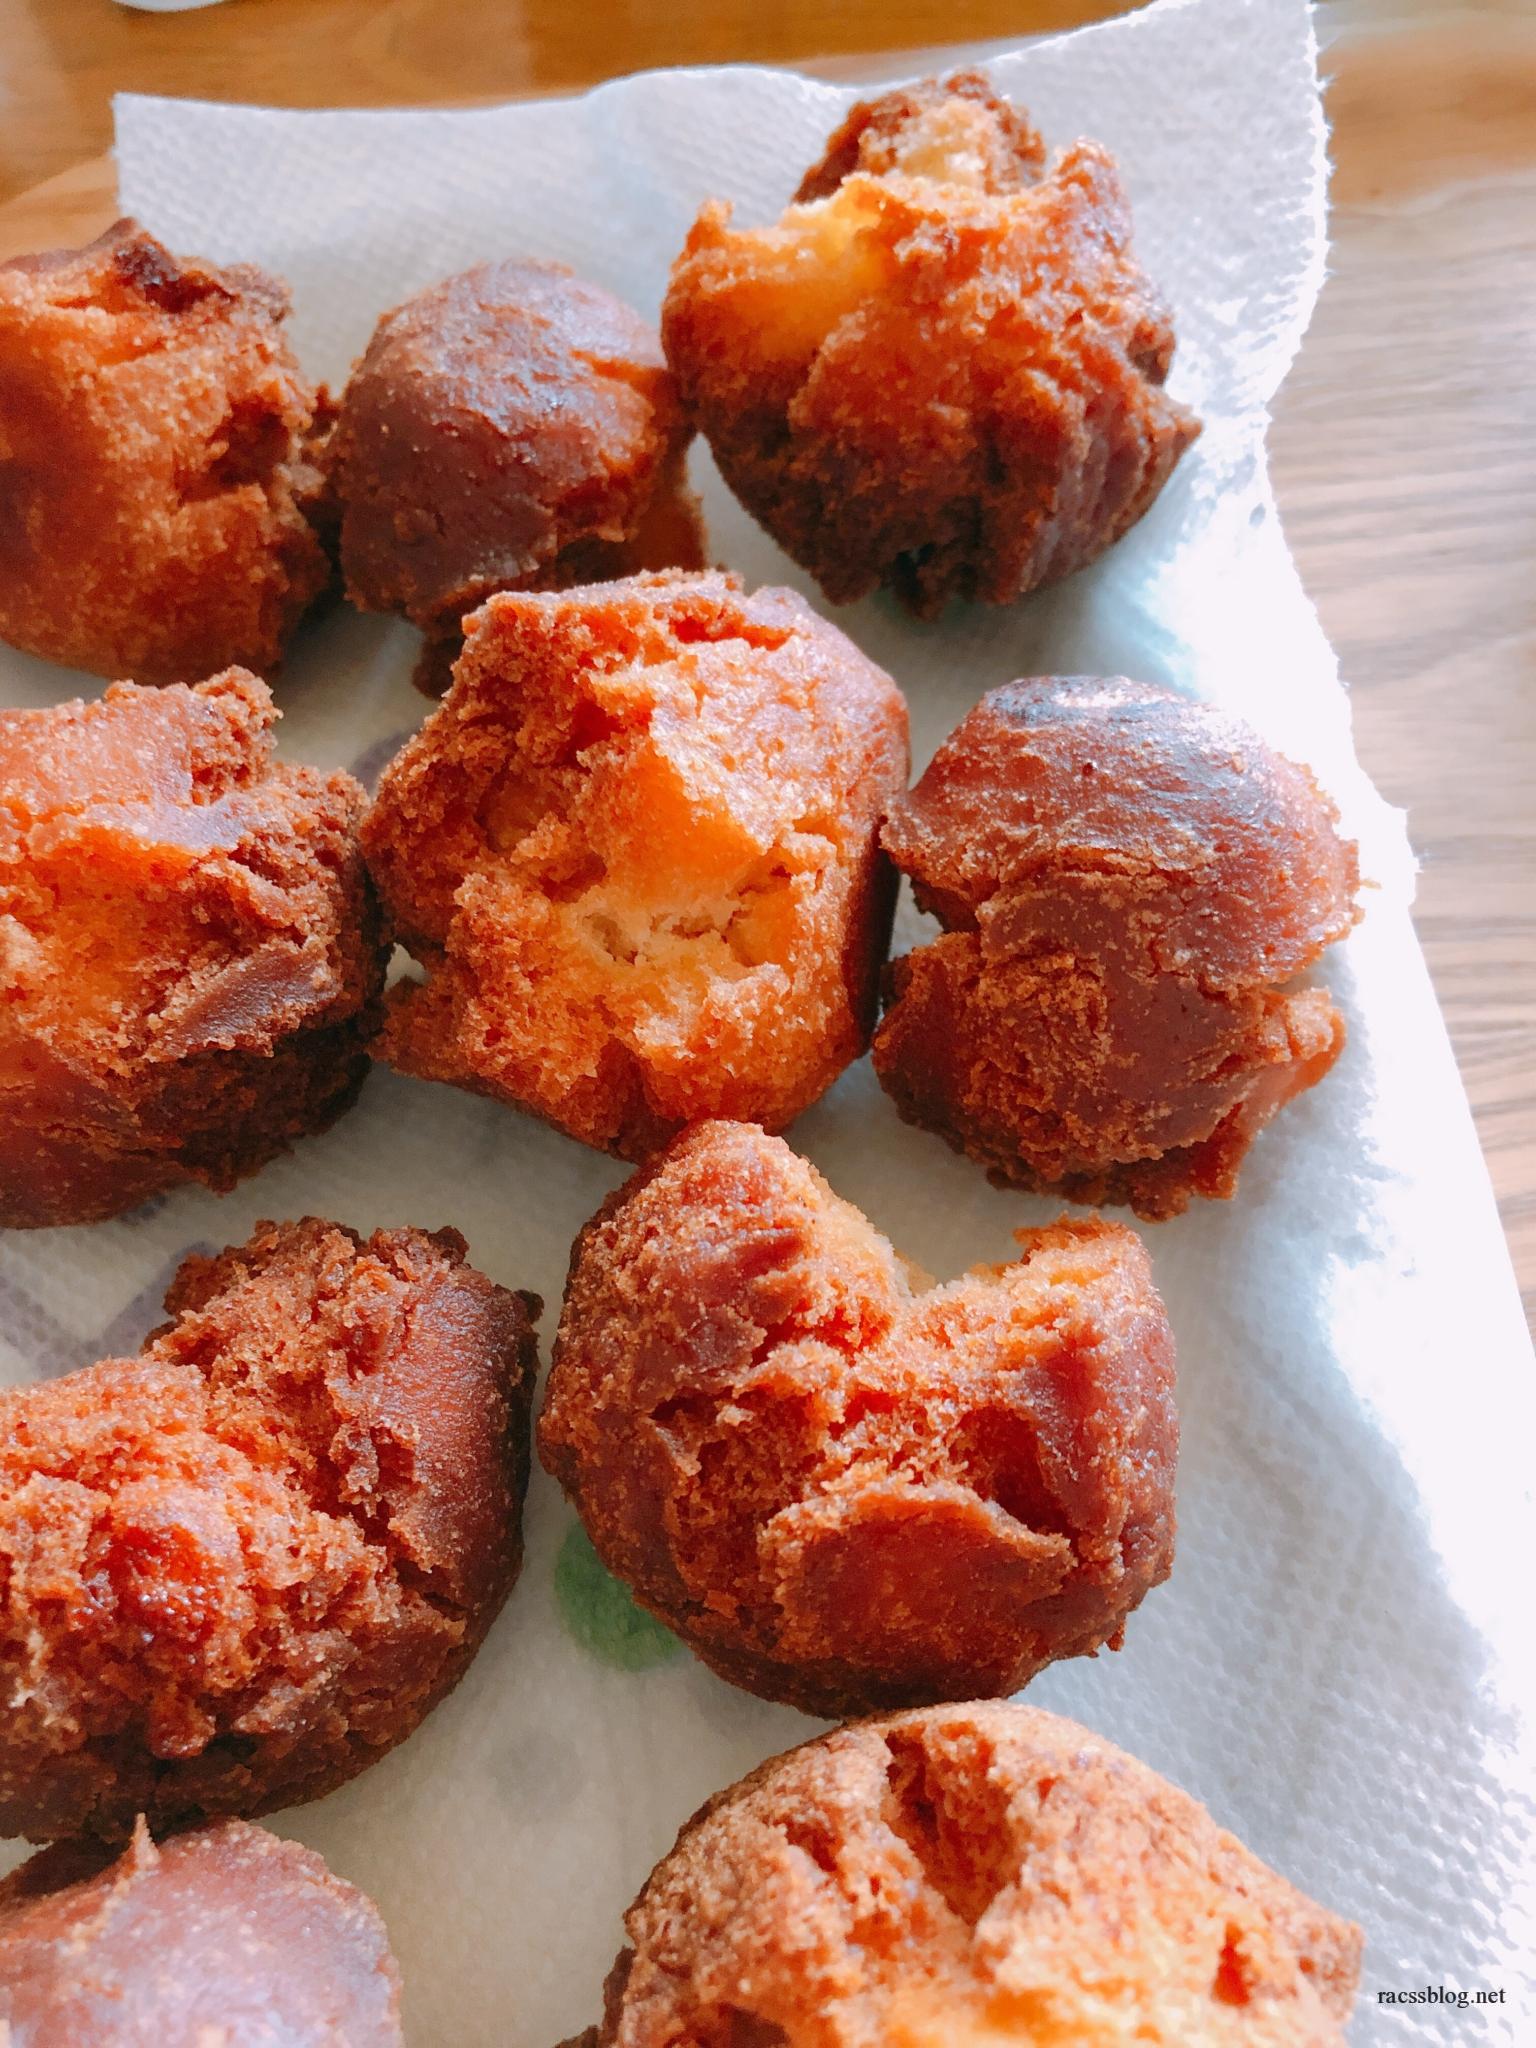 沖縄土産 紅芋タルト ナンポー と お菓子御殿 食べ比べ どちらがおいしい Racssblog